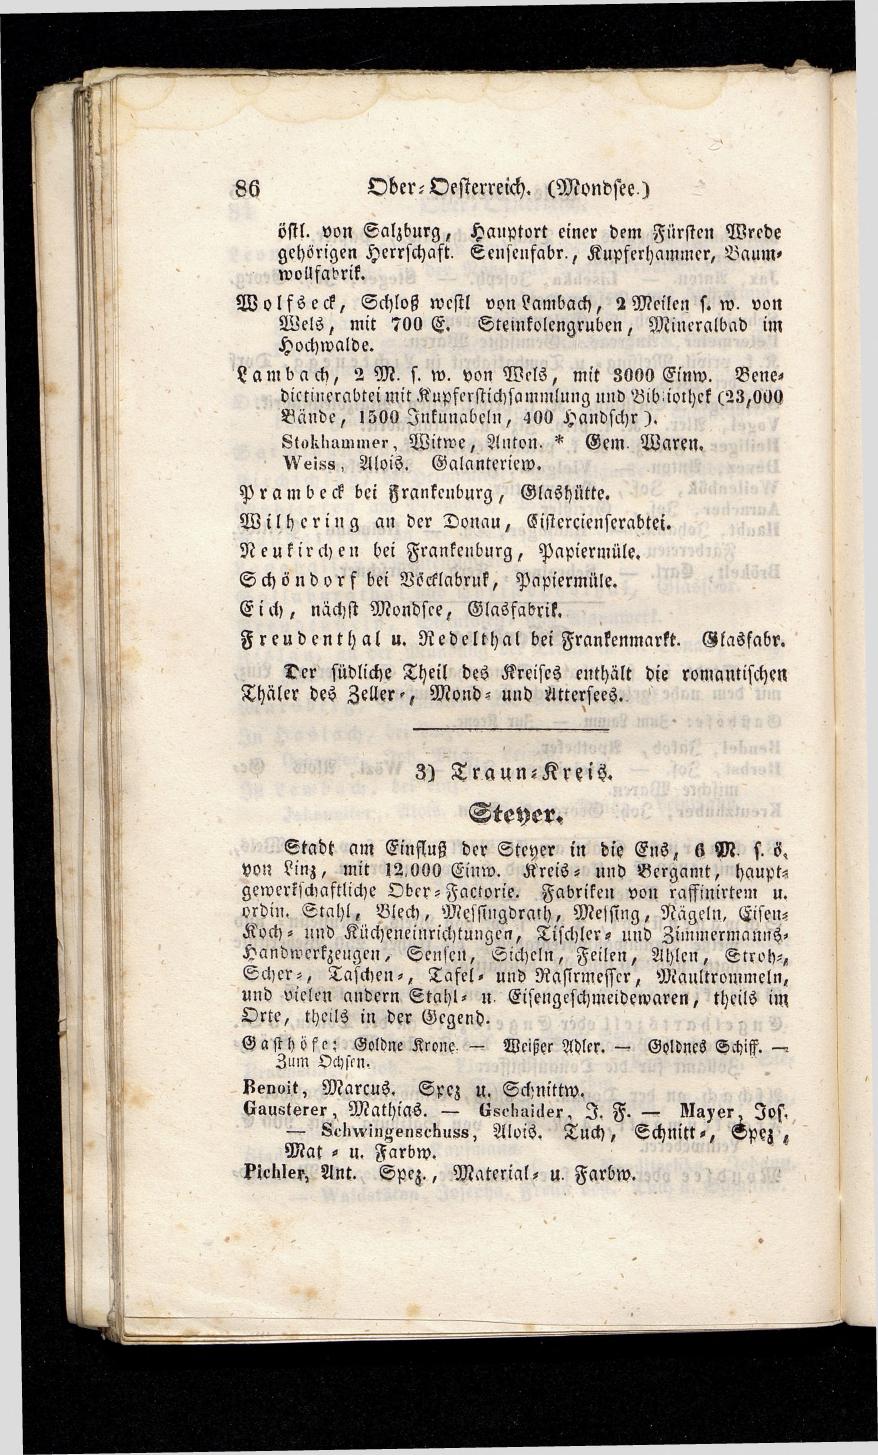 Grosses Adressbuch der Kaufleute. No. 13. Oesterreich ober u. unter der Enns 1844 - Seite 90